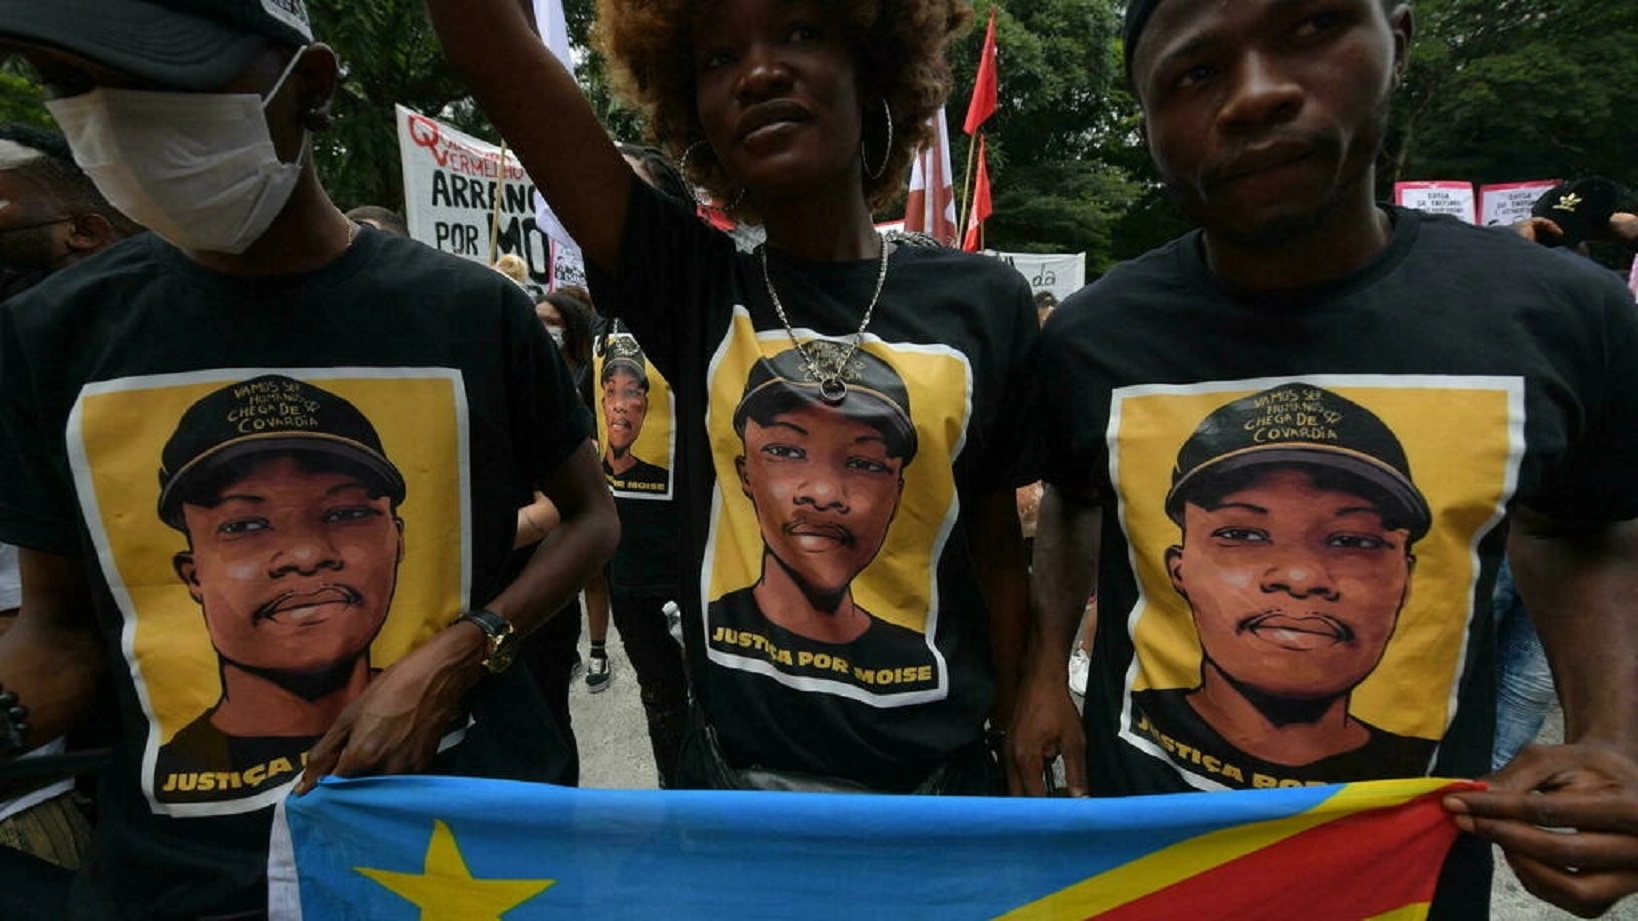  مئات الأشخاص يتظاهرون في ريو دي جانيرو للمطالبة بالعدالة لمويز كباغامبي، وهو مهاجر كونغولي إلى البرازيل قُتل بوحشية نيلسون الميدا. في 5 شباط/فبراير 2022